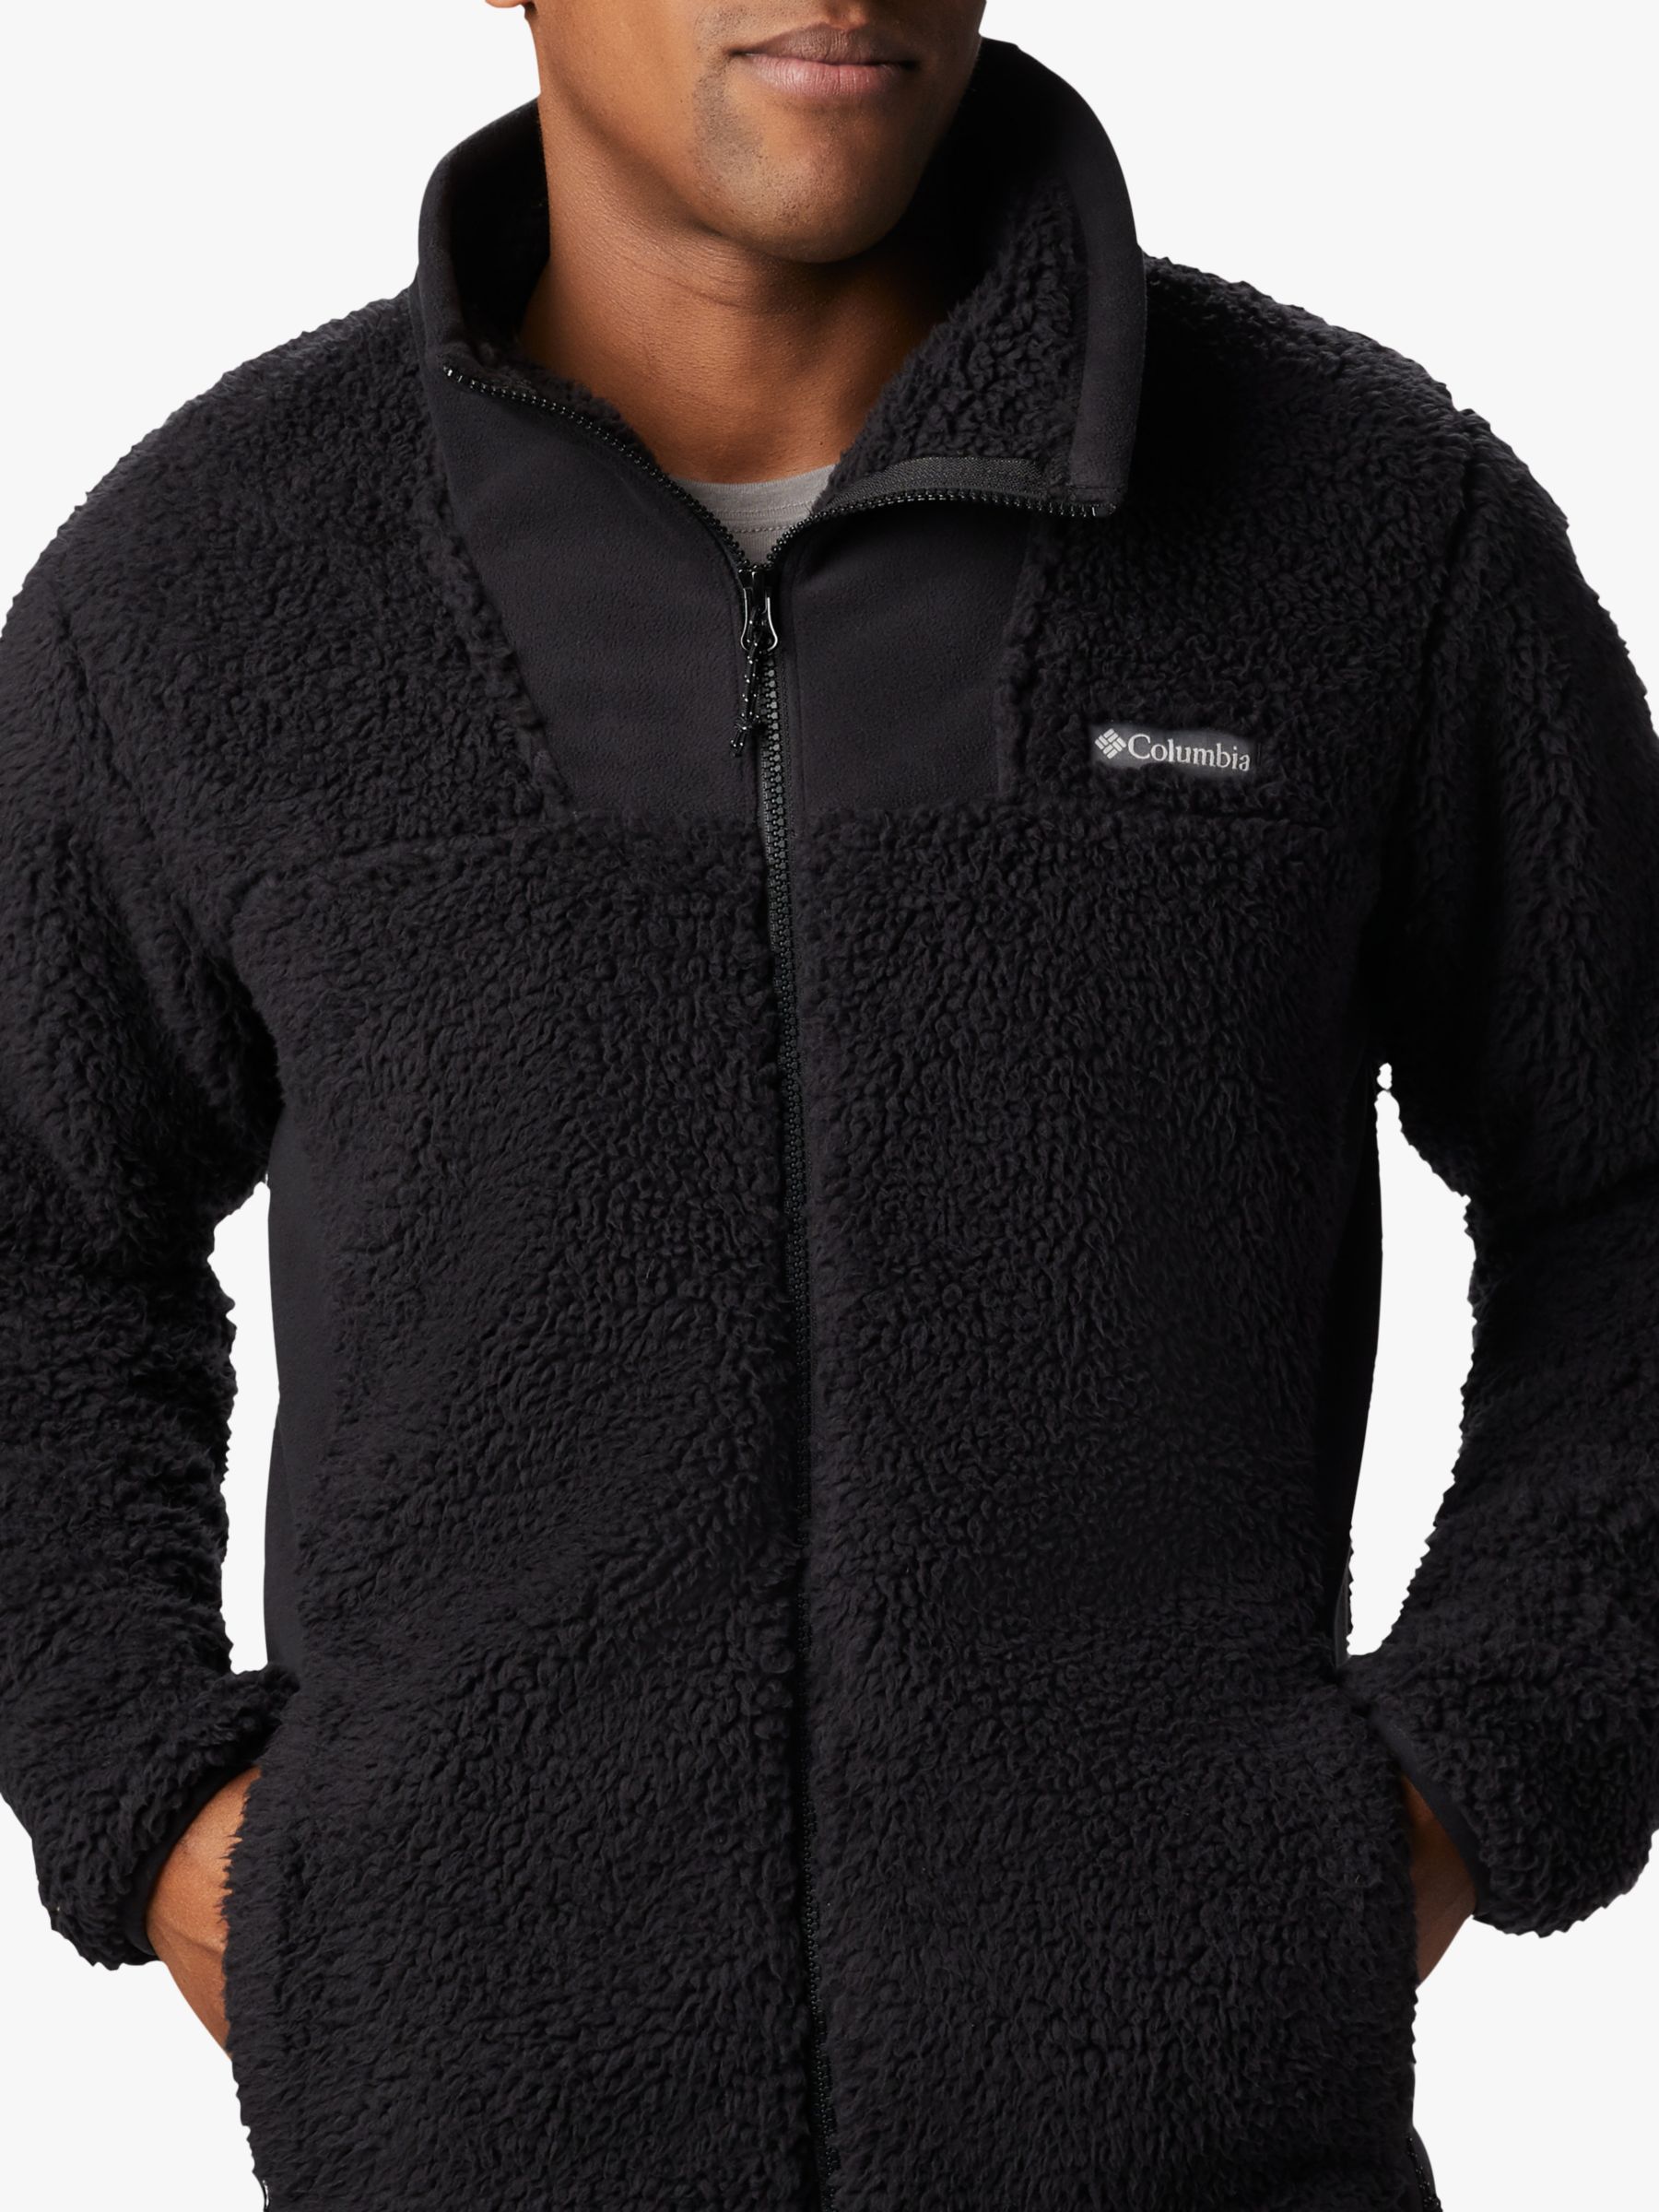 columbia men's fleece jacket with hood